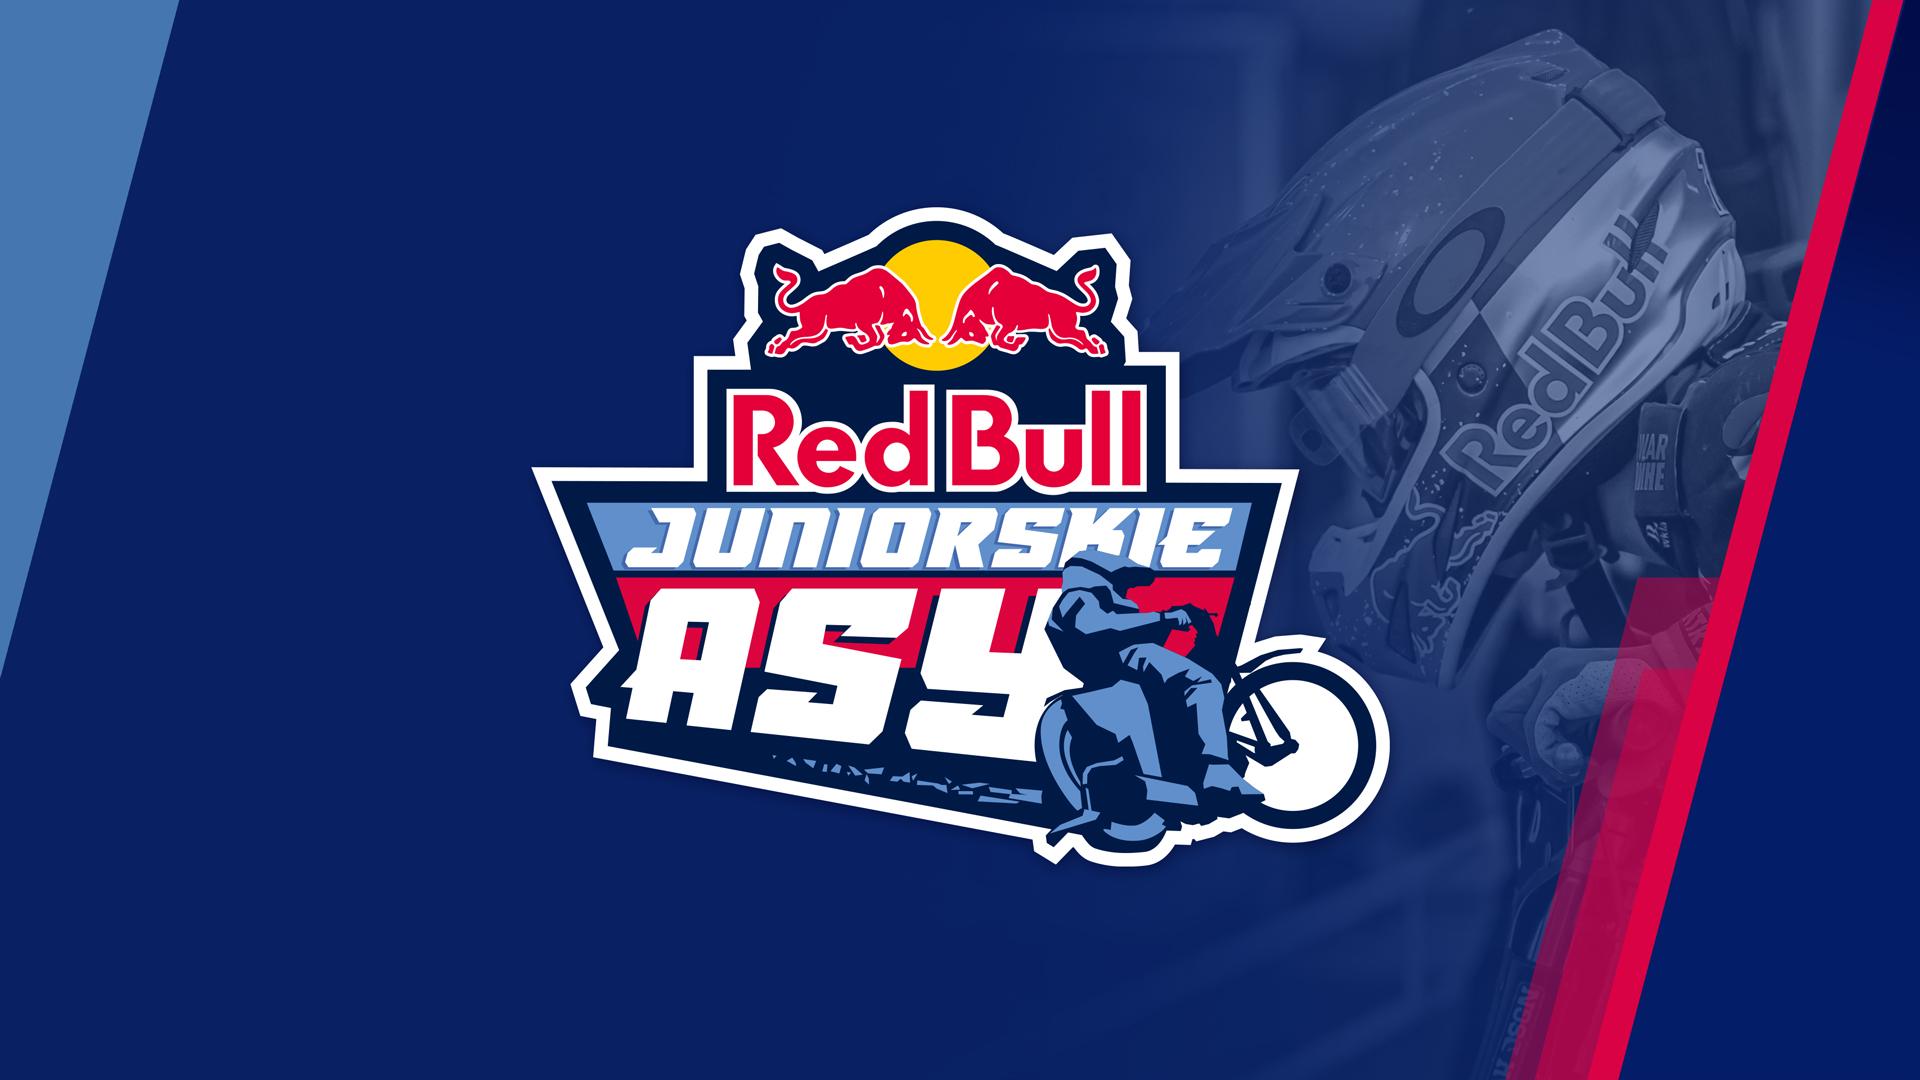 Red Bull Juniorskie Asy: Nowe nazwiska w rankingu po drugiej rundzie zmagań